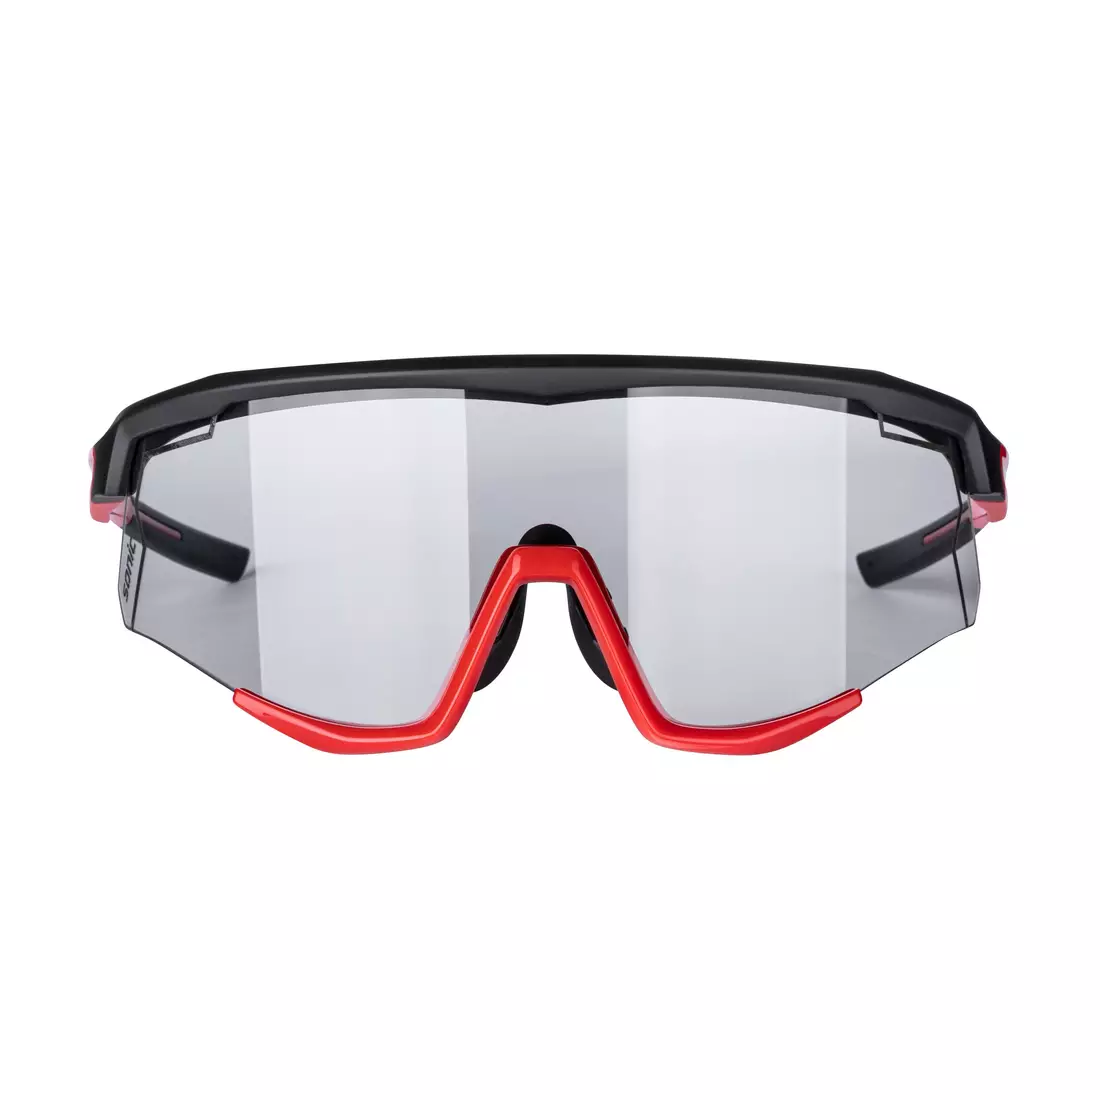 FORCE ochelari de ciclism / sport SONIC, Fotocromatic, negru și roșu, 910957